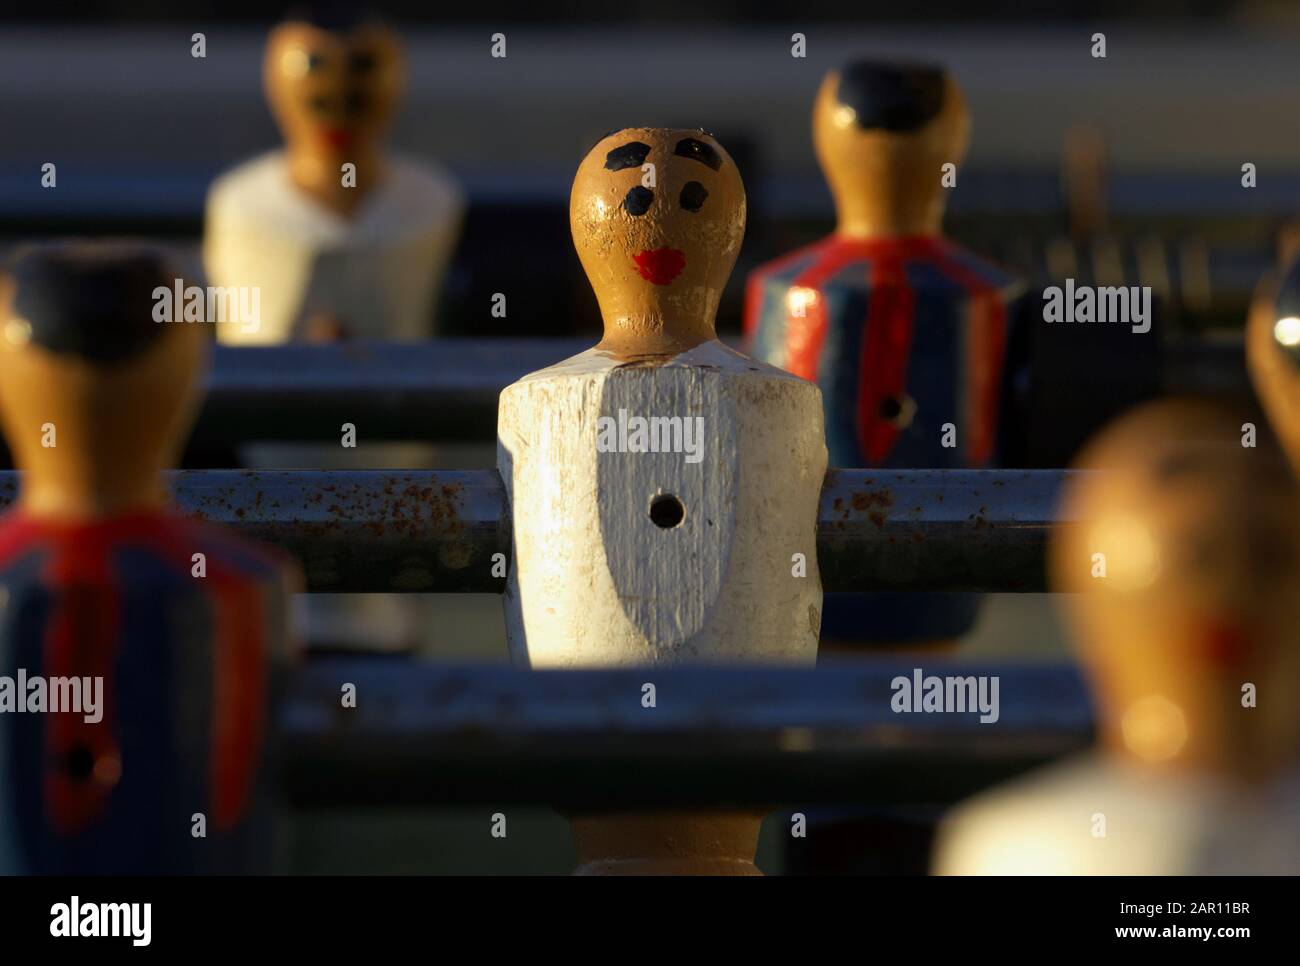 les joueurs ont exagéré le visage sur une table de fussball représentant le real madrid et barcelone en espagne Banque D'Images